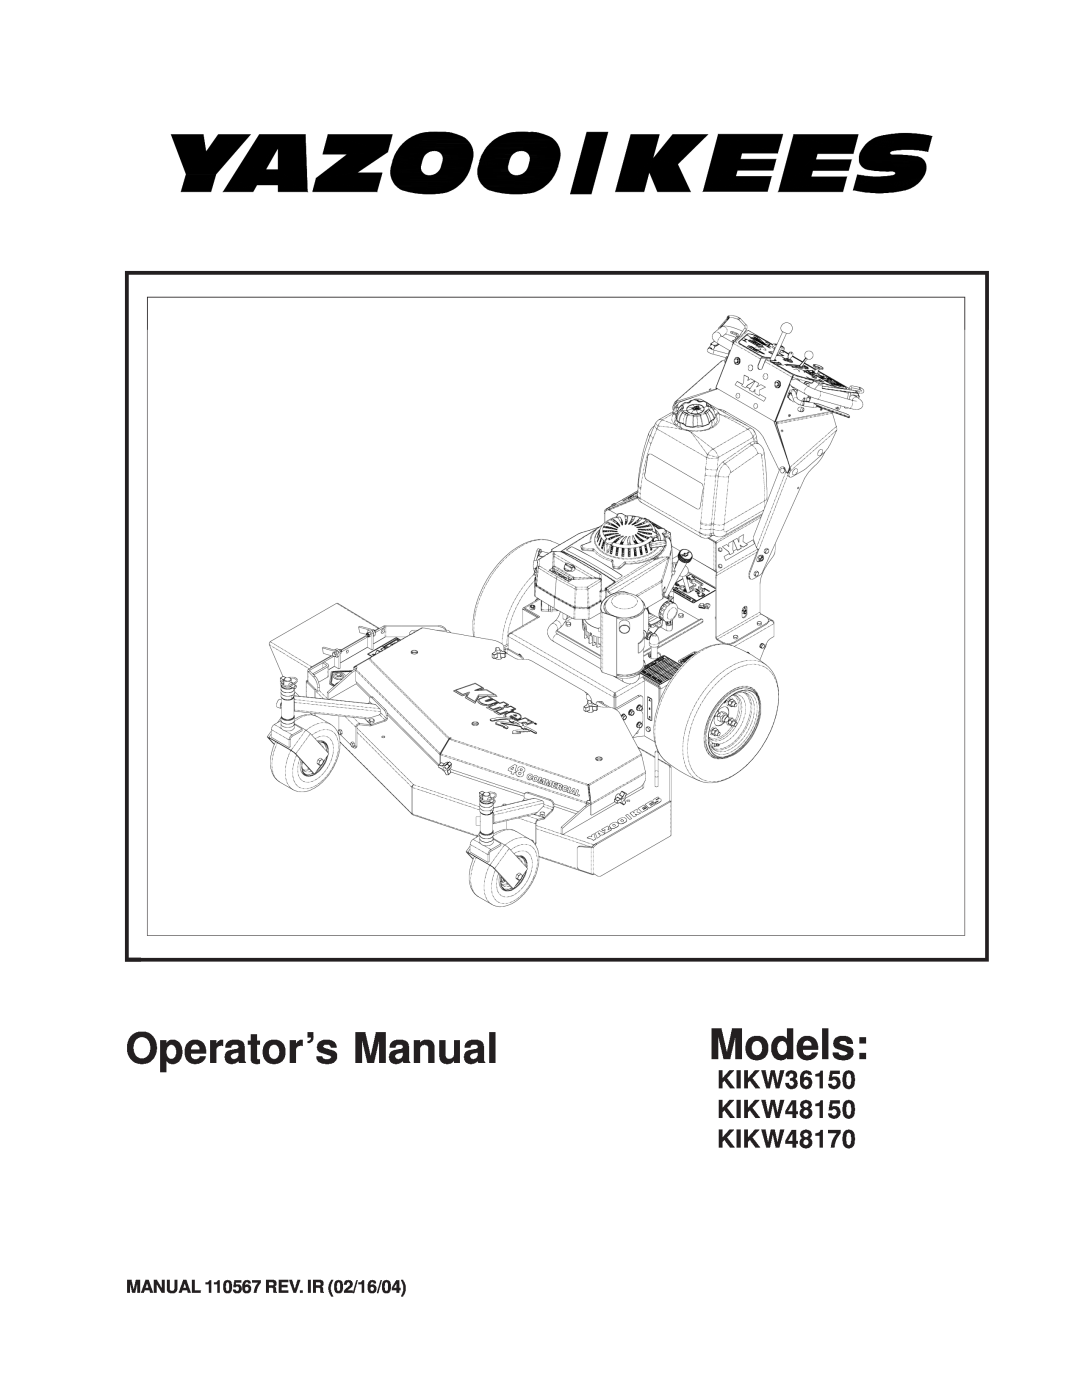 Yazoo/Kees KIKW36150, KIKW48150, KIKW48170 manual Operator’s Manual, Models, MANUAL 110567 REV. IR 02/16/04 